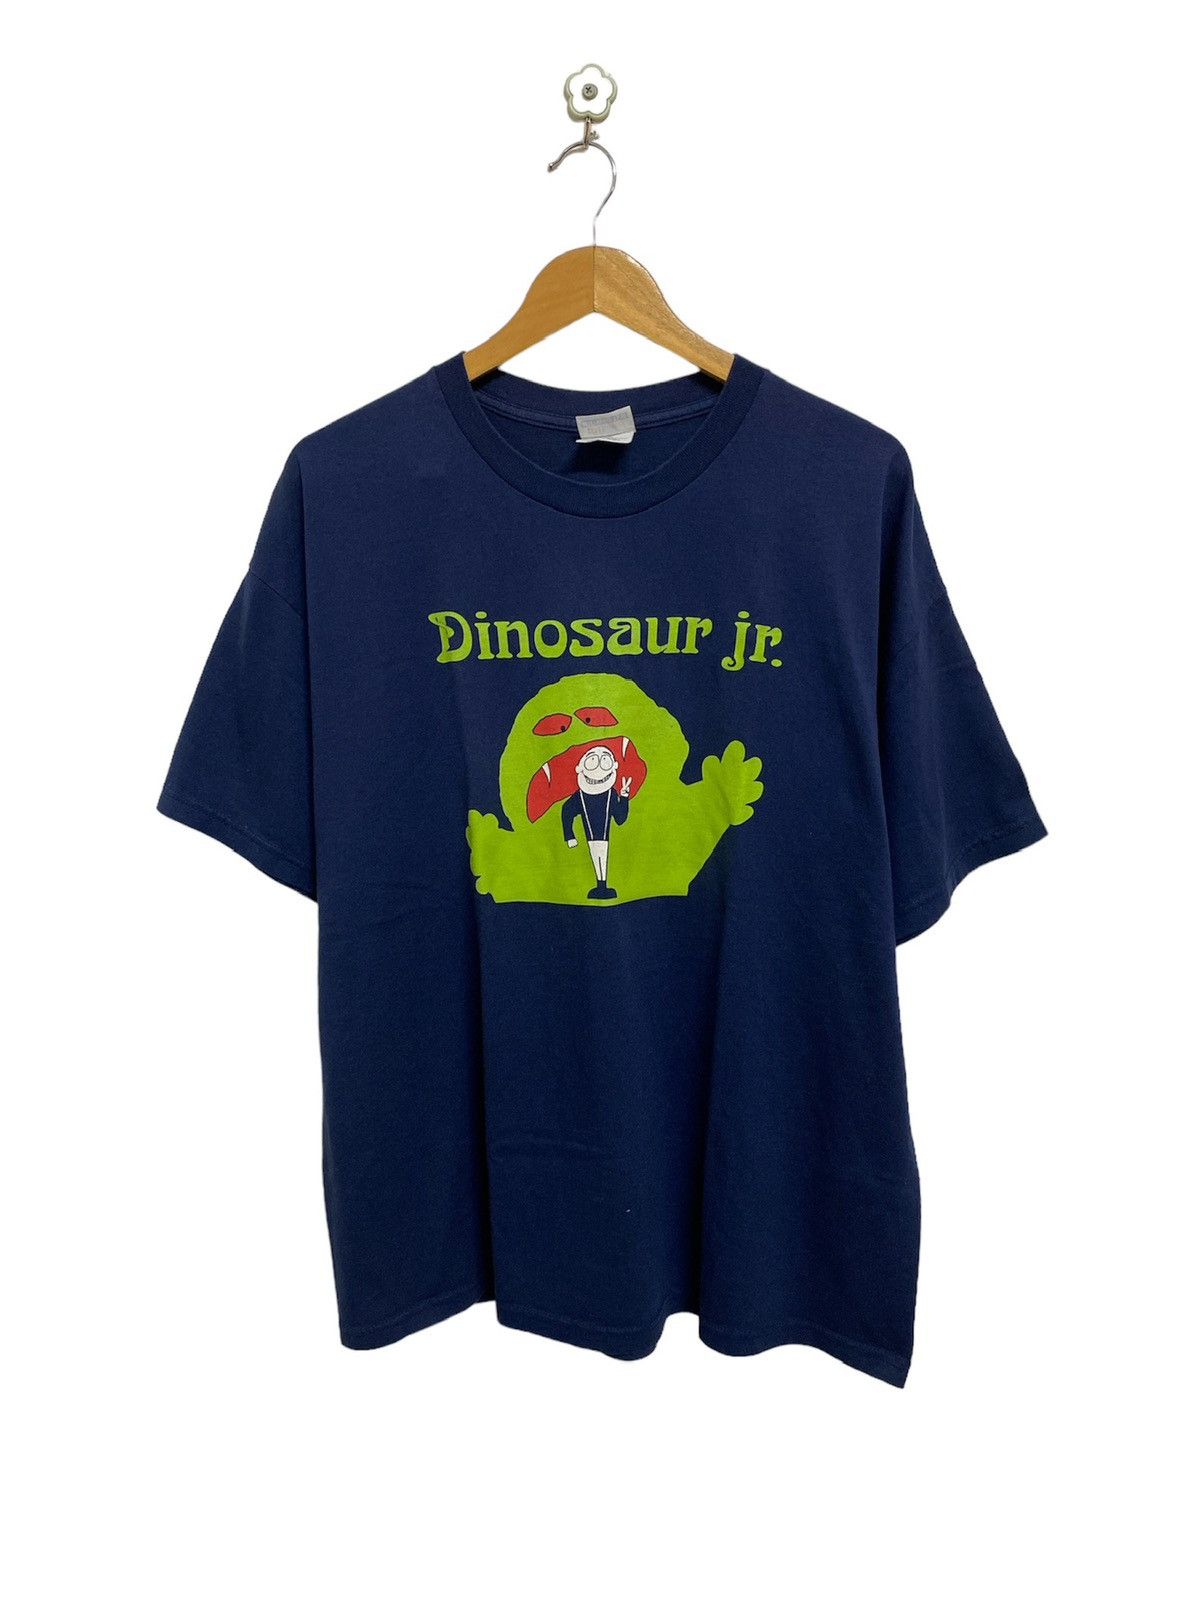 Vintage Dinasour Jr. Green Monster Tshirt - 1